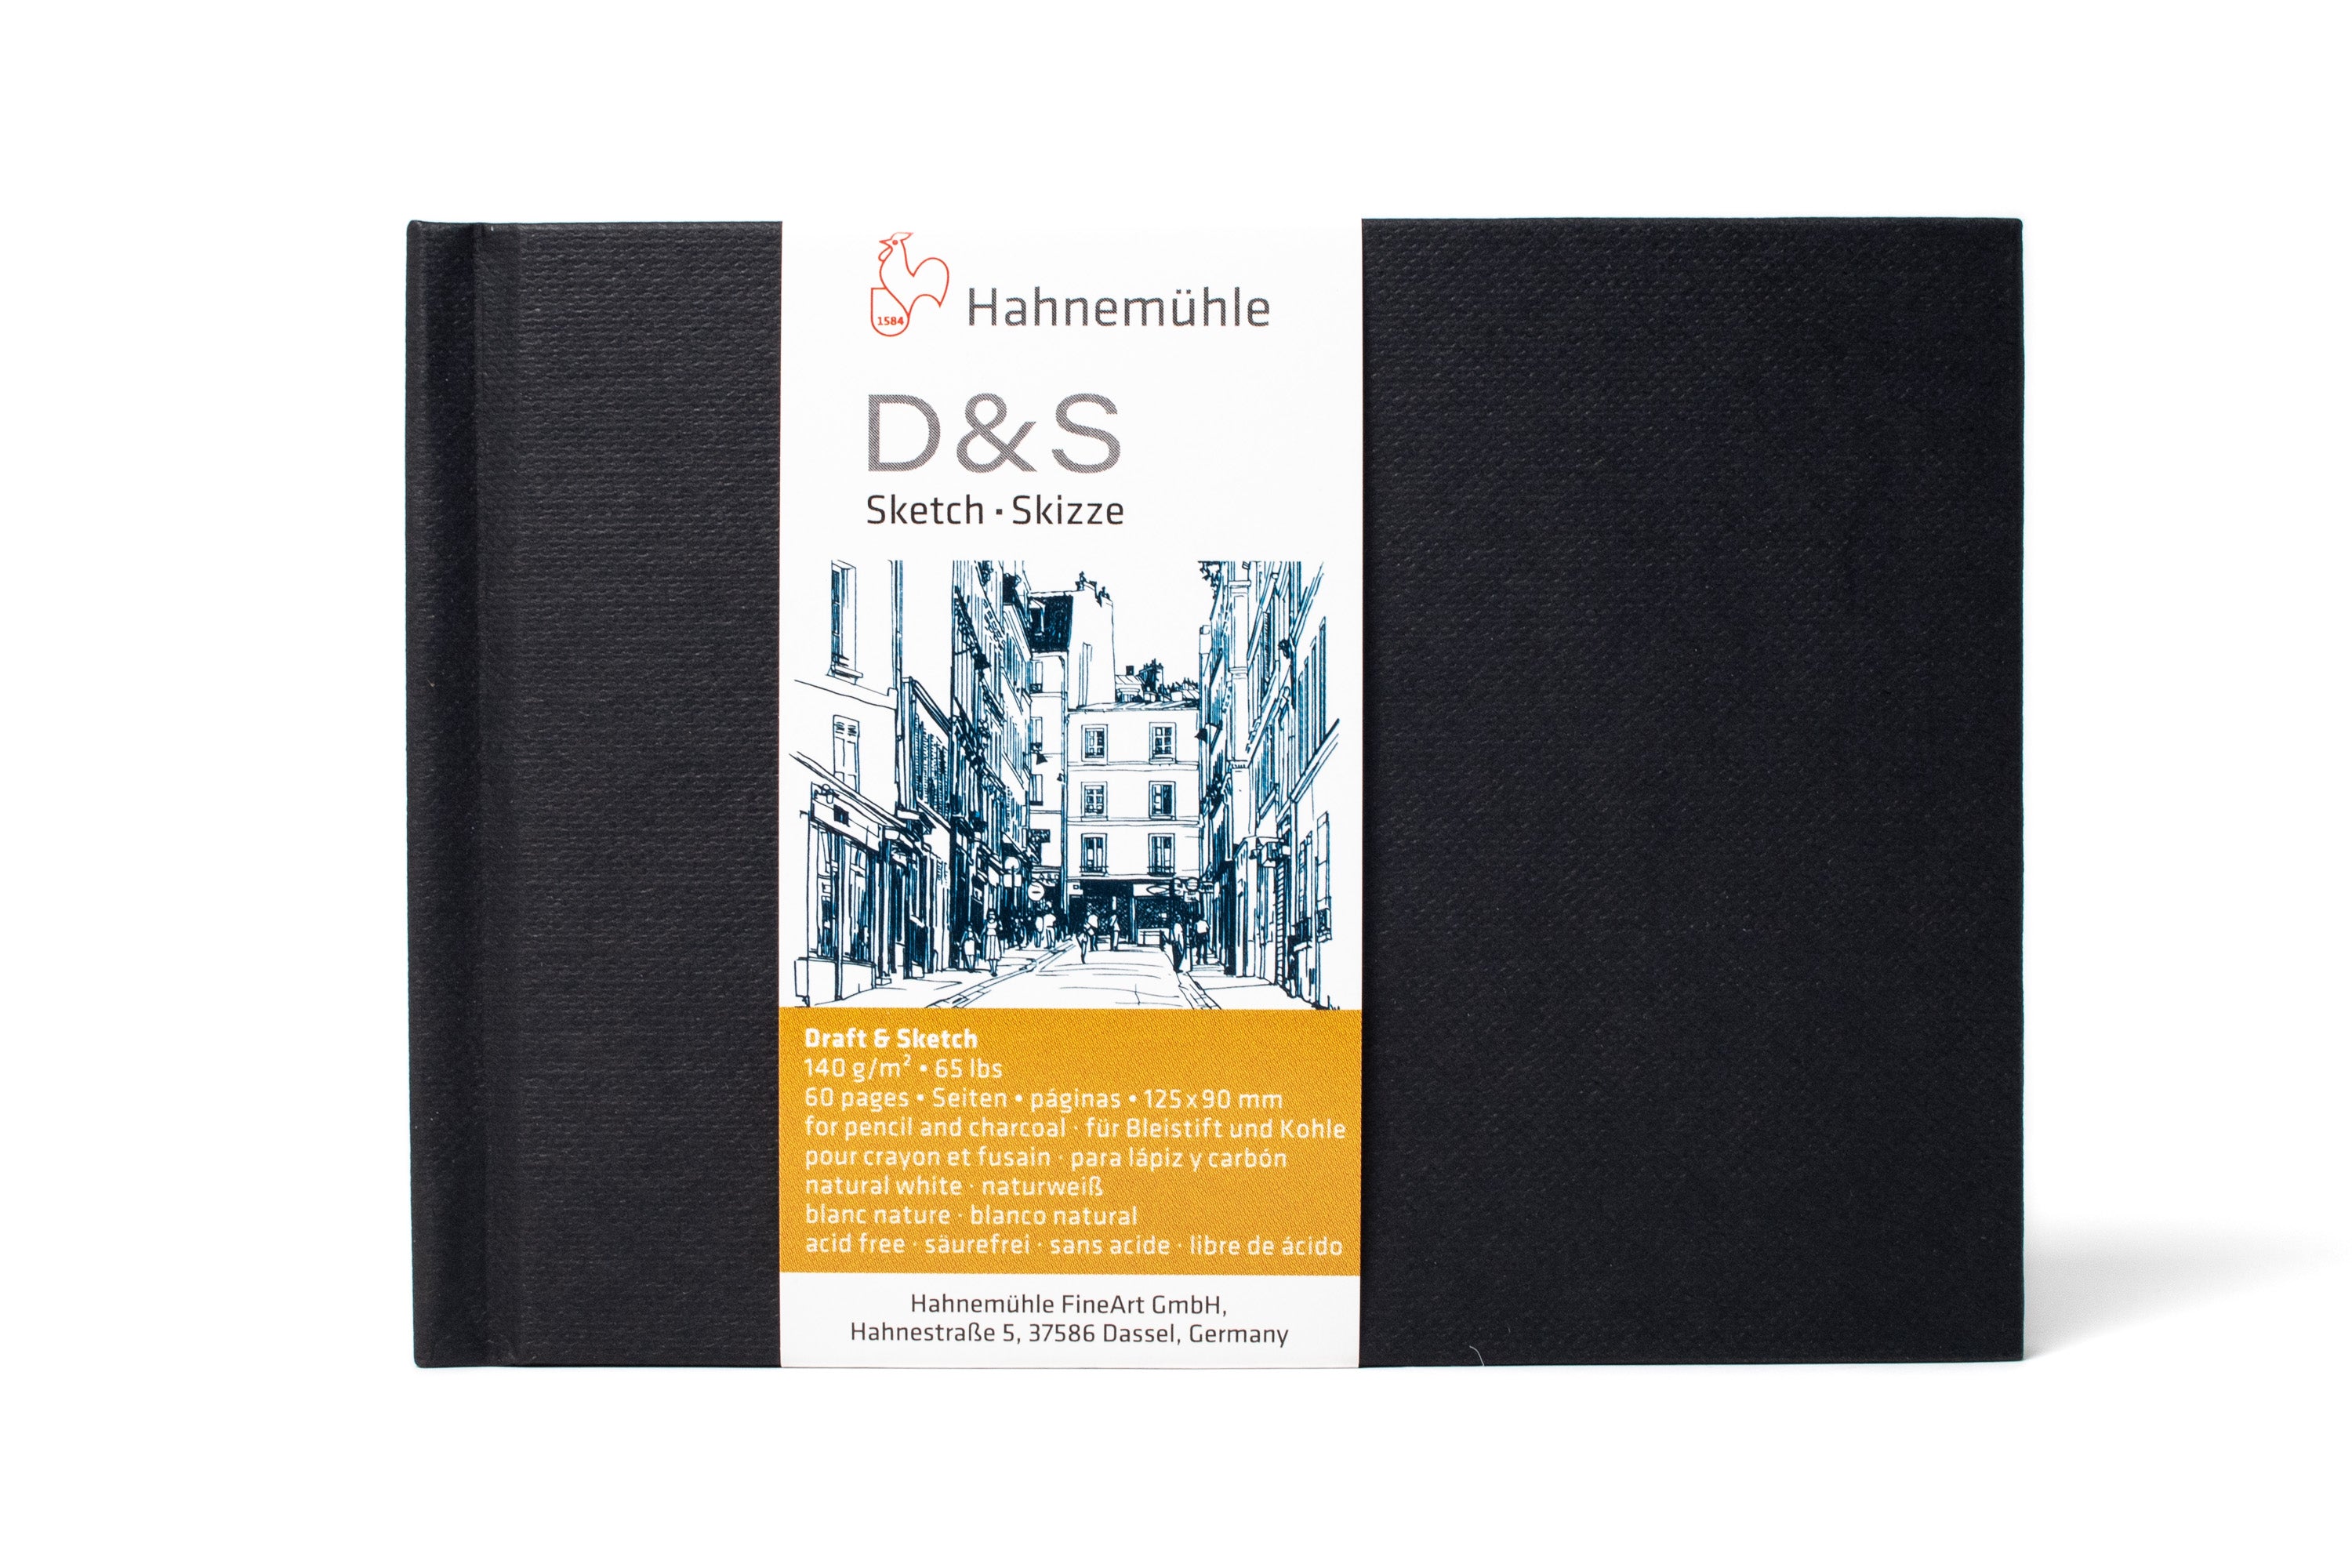 German Genuine Hahnemuhle Brown Paper Sketchbook Gray Sketch Drawing  Sketchbook Artist Painting Books Art Students Supplies - AliExpress